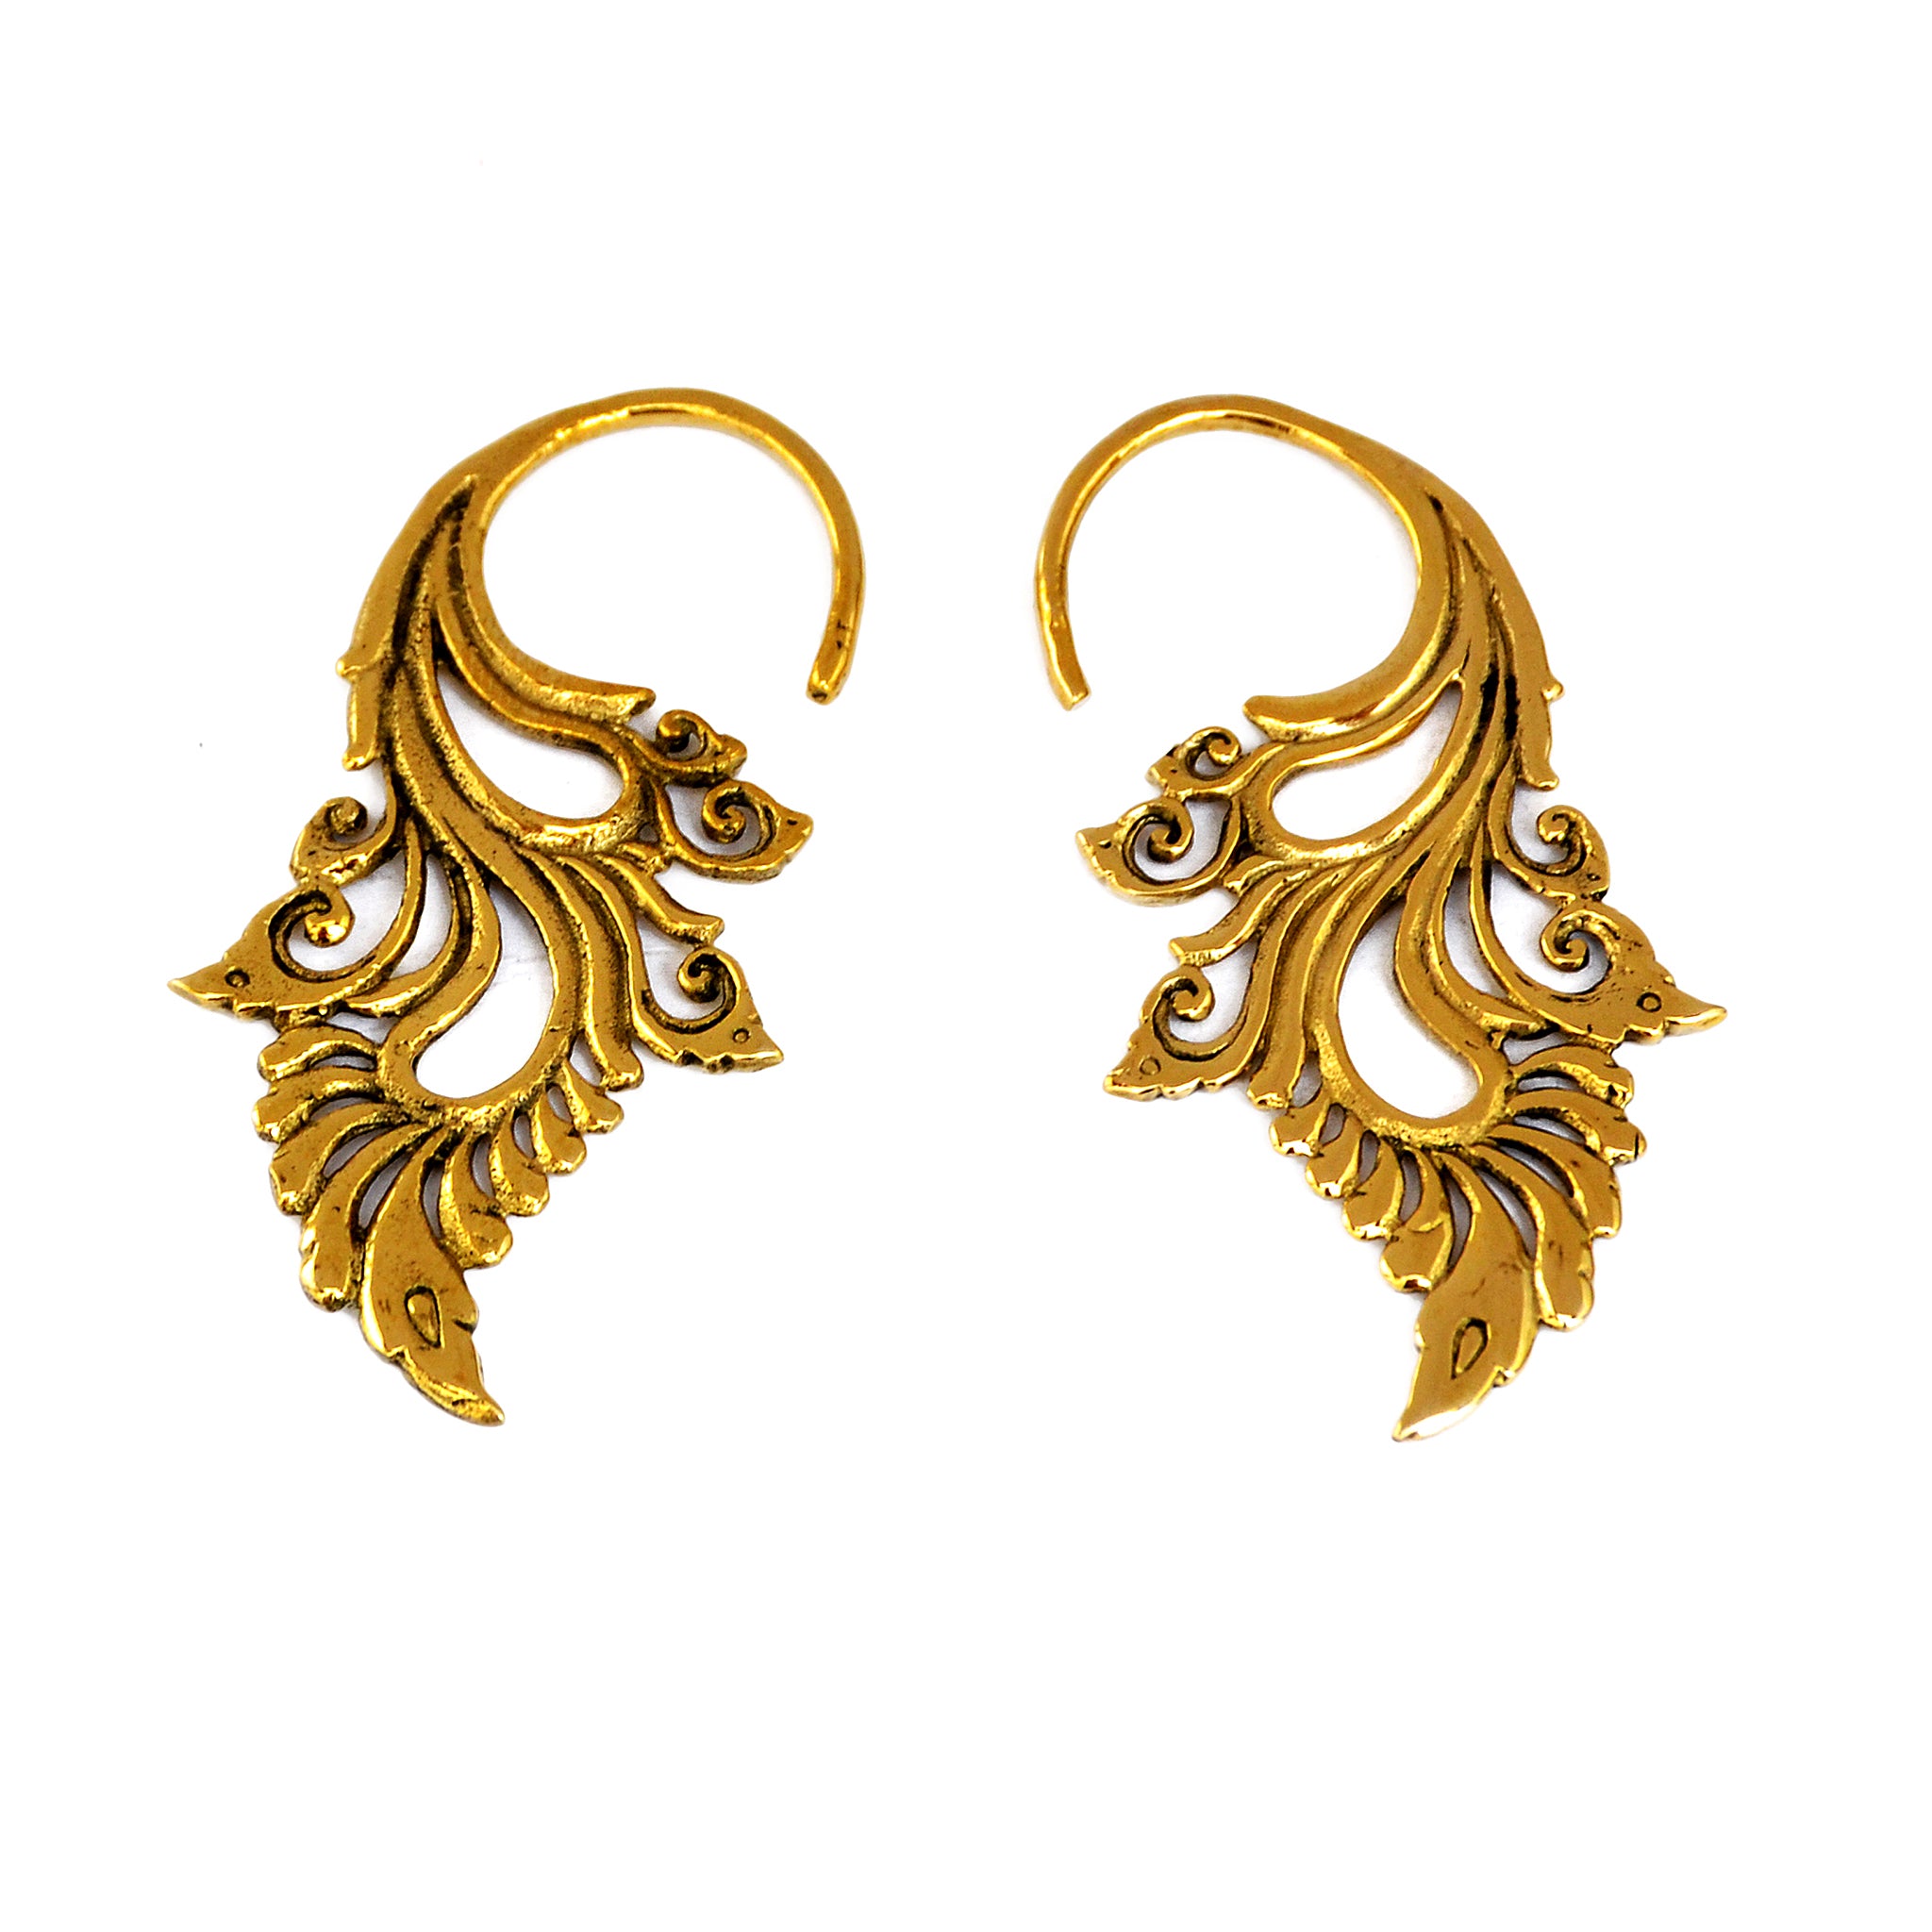 Ethnic wings earrings